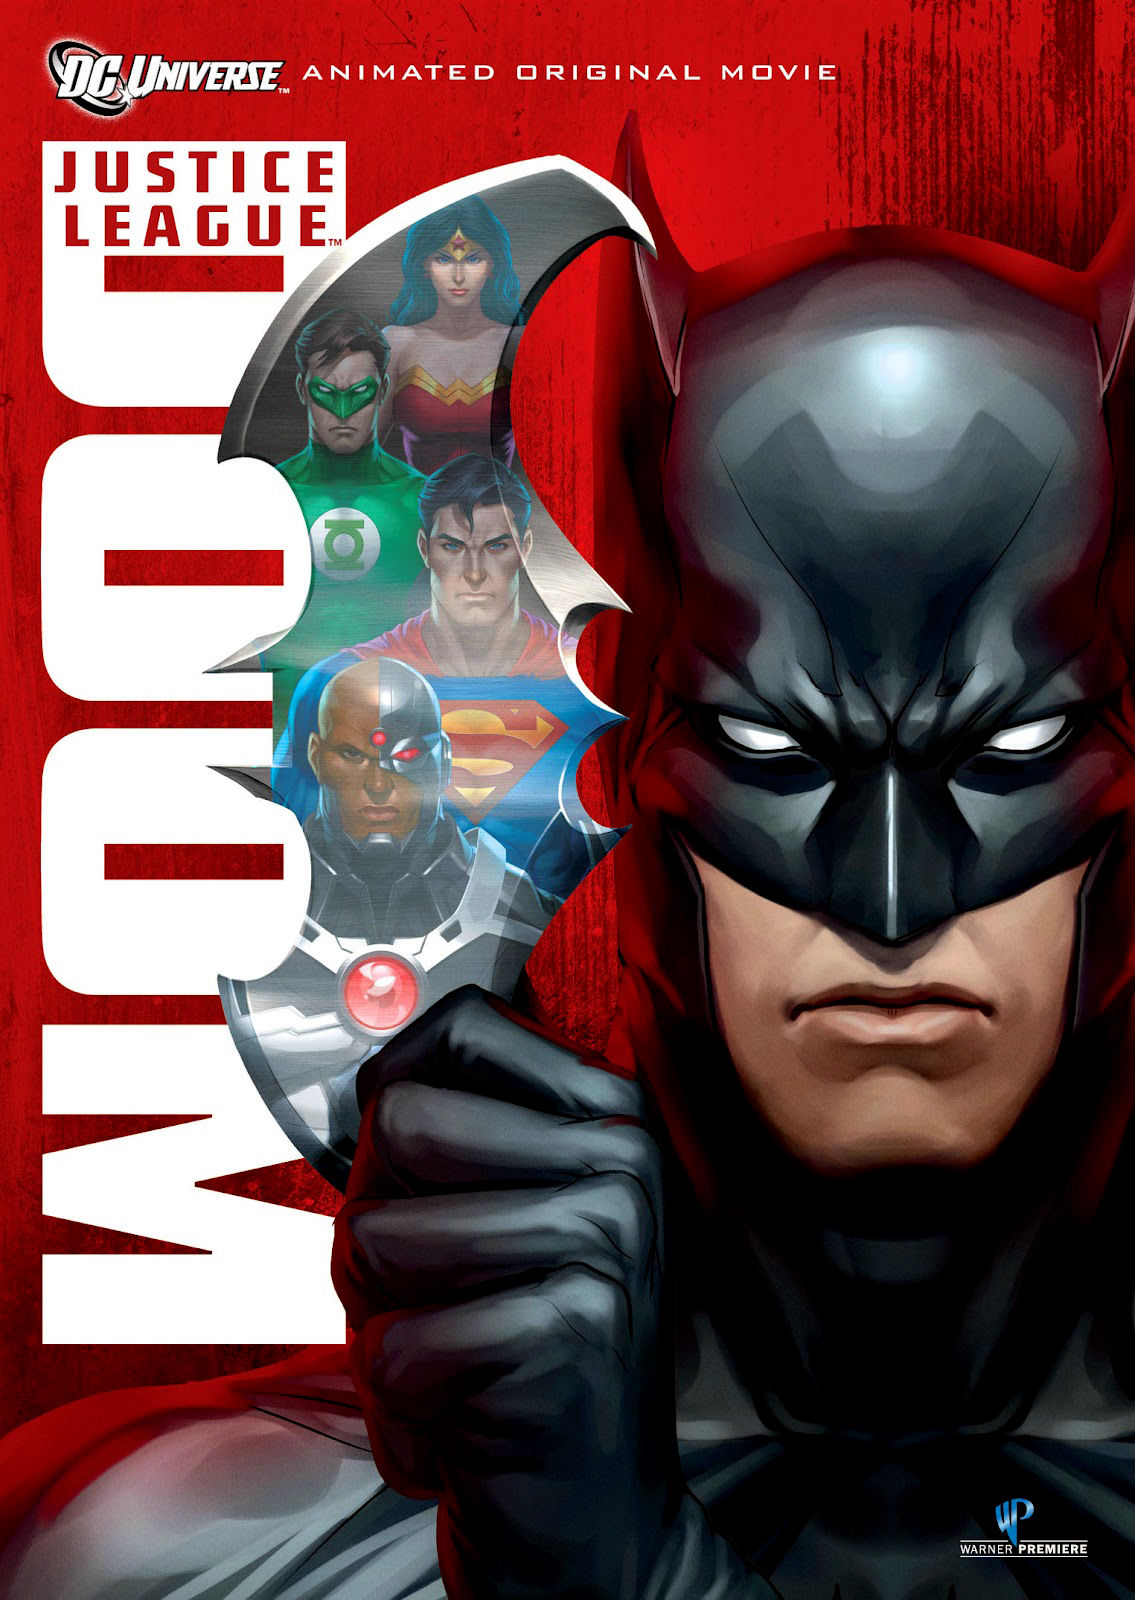 ดูหนังออนไลน์ฟรี Justice League Doom (2012) จัสติซ ลีก: ศึกพิฆาตซูเปอร์ฮีโร่ หนังเต็มเรื่อง หนังมาสเตอร์ ดูหนังHD ดูหนังออนไลน์ ดูหนังใหม่